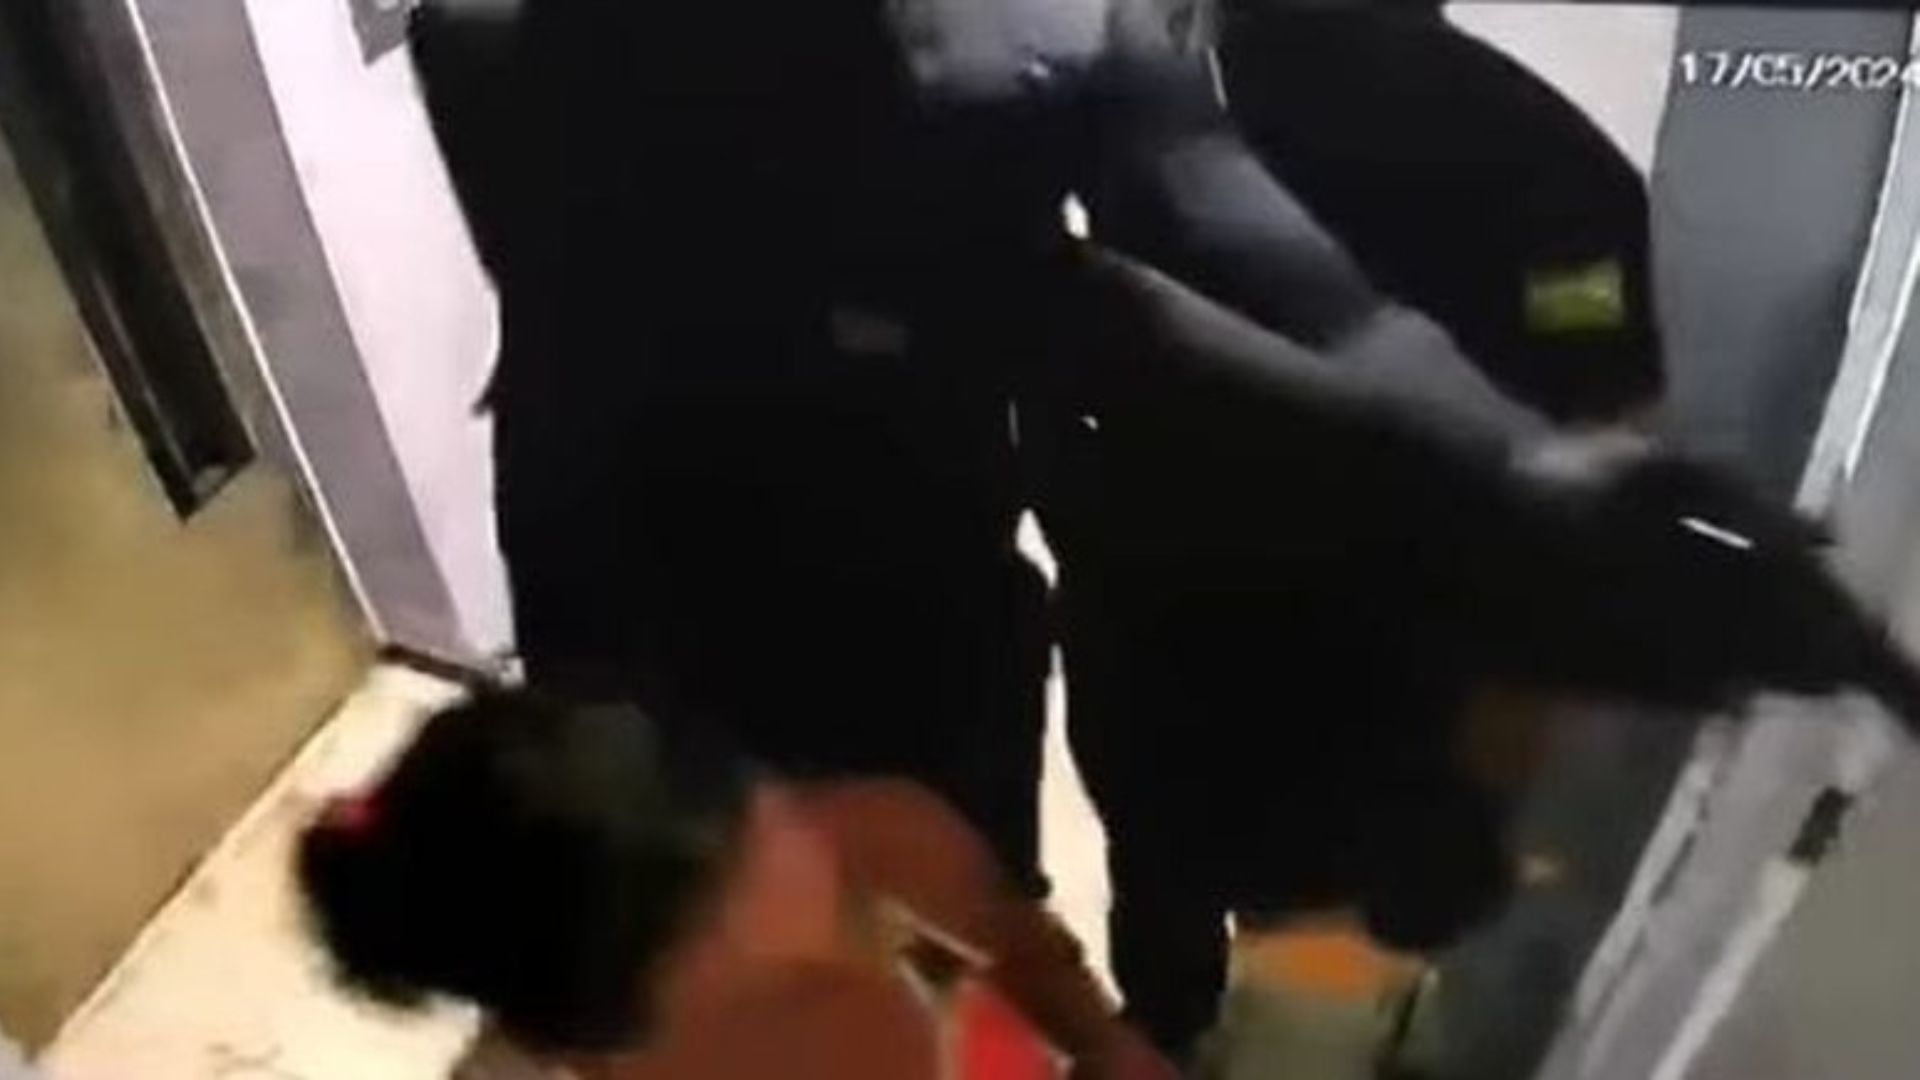 Homens vestidos de policiais invadem edifício em Boa Viagem e roubam R$ 100 MIL de casal.